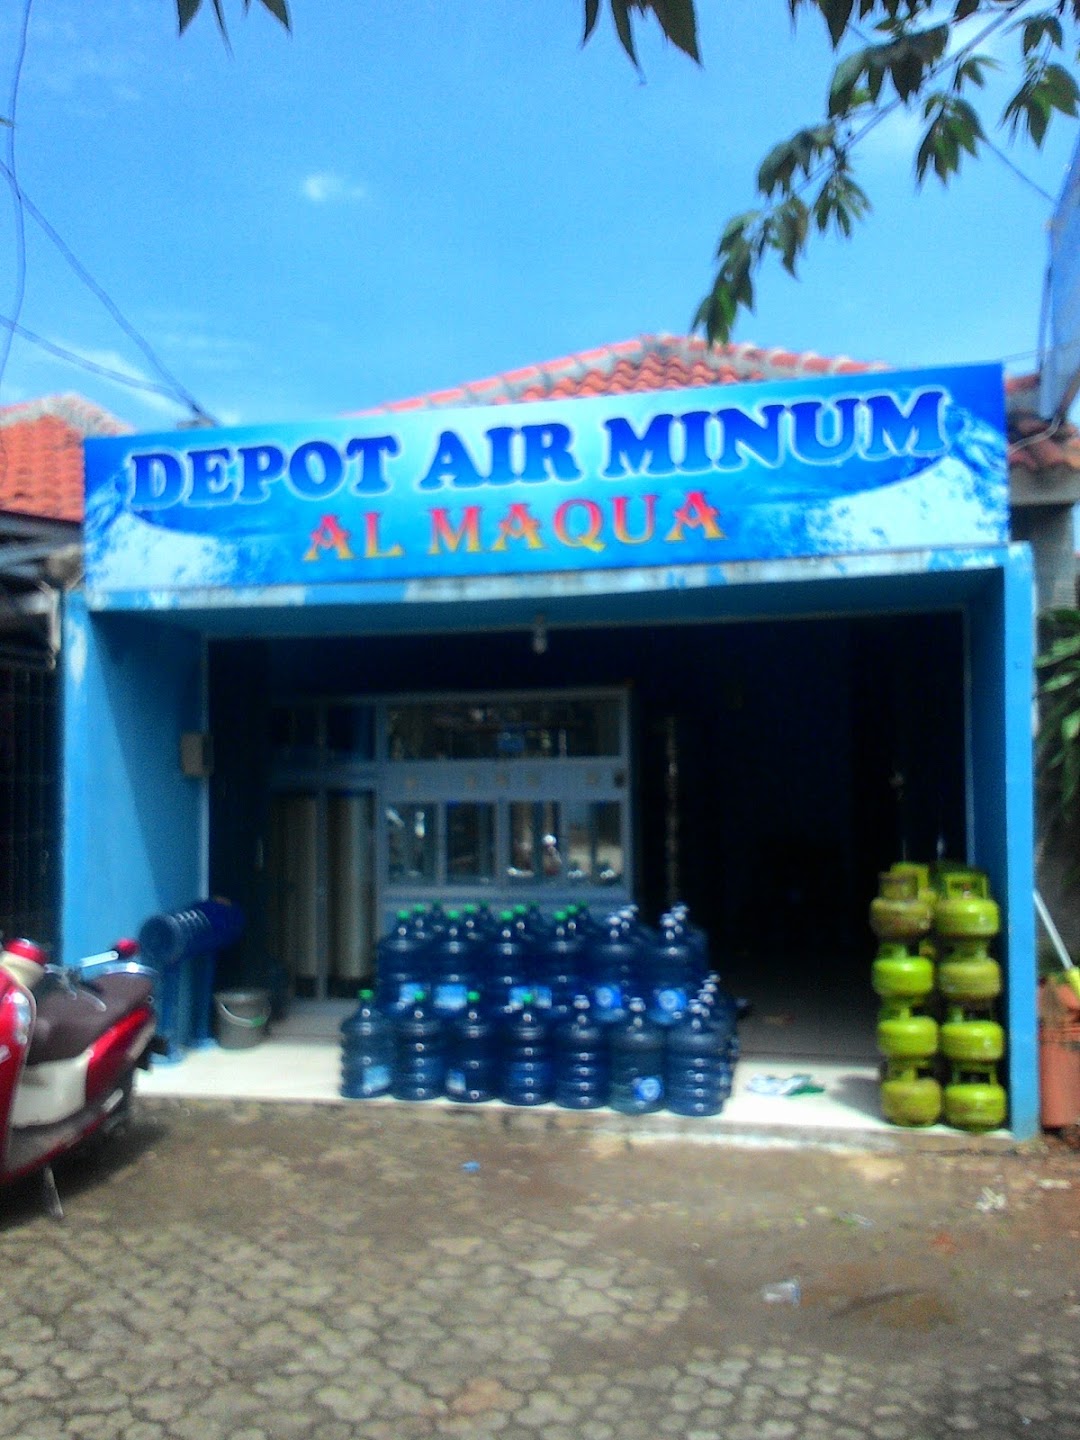 Depot Air Minum Al Maqua